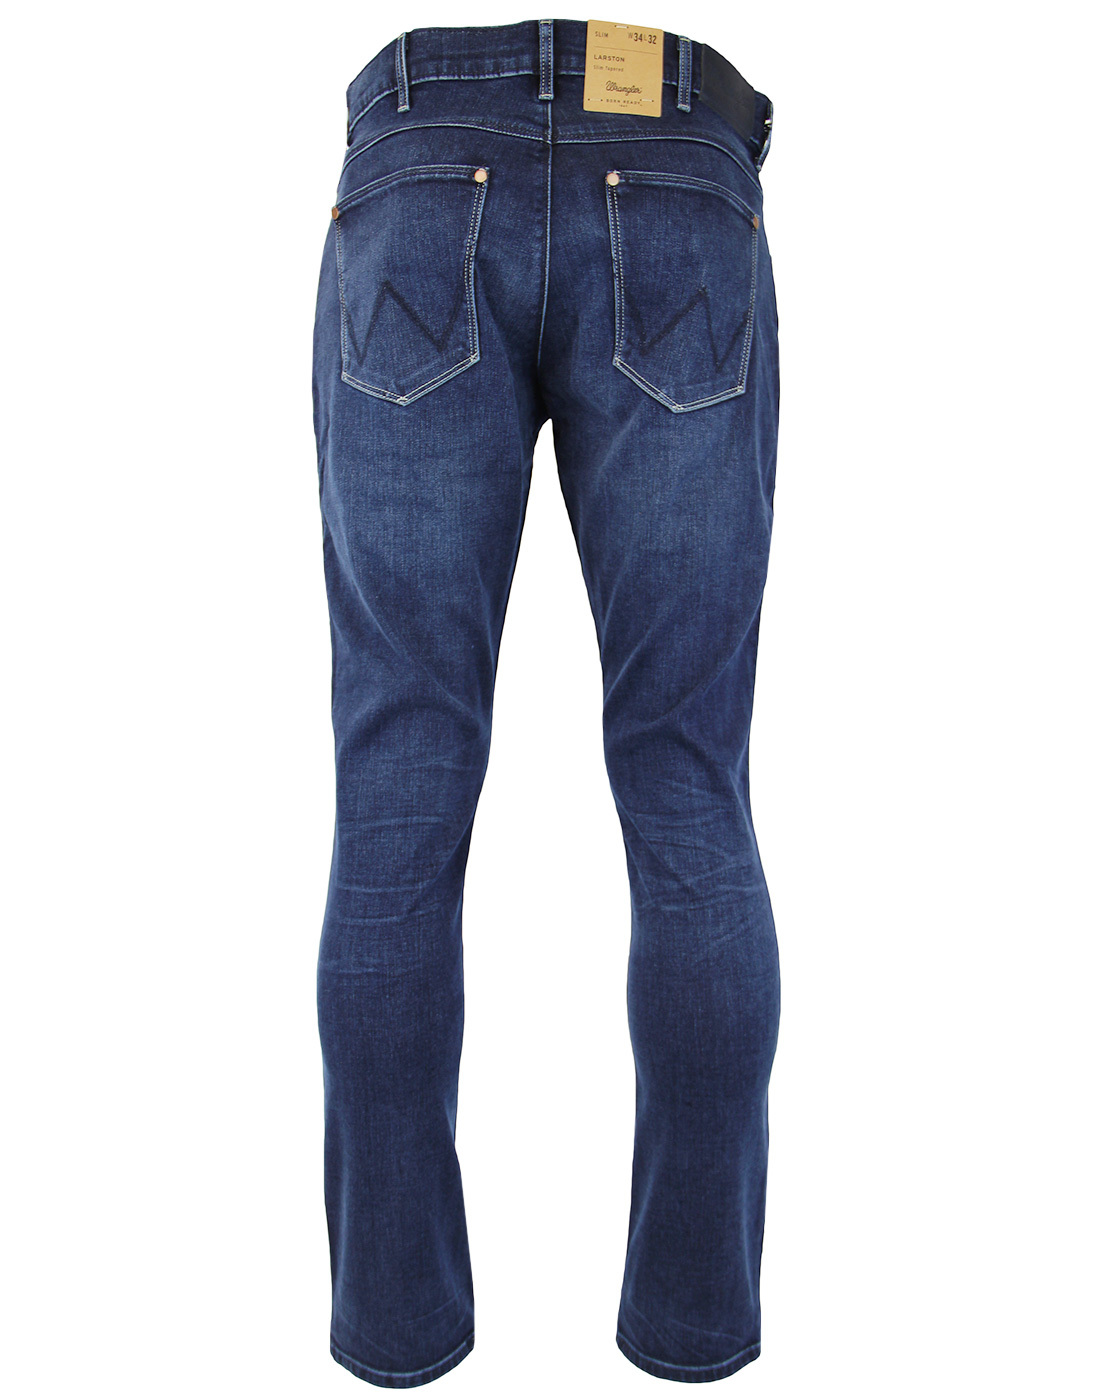 Larston WRANGLER Slim Soft Luxe Denim Jeans in Comfy Break Blue